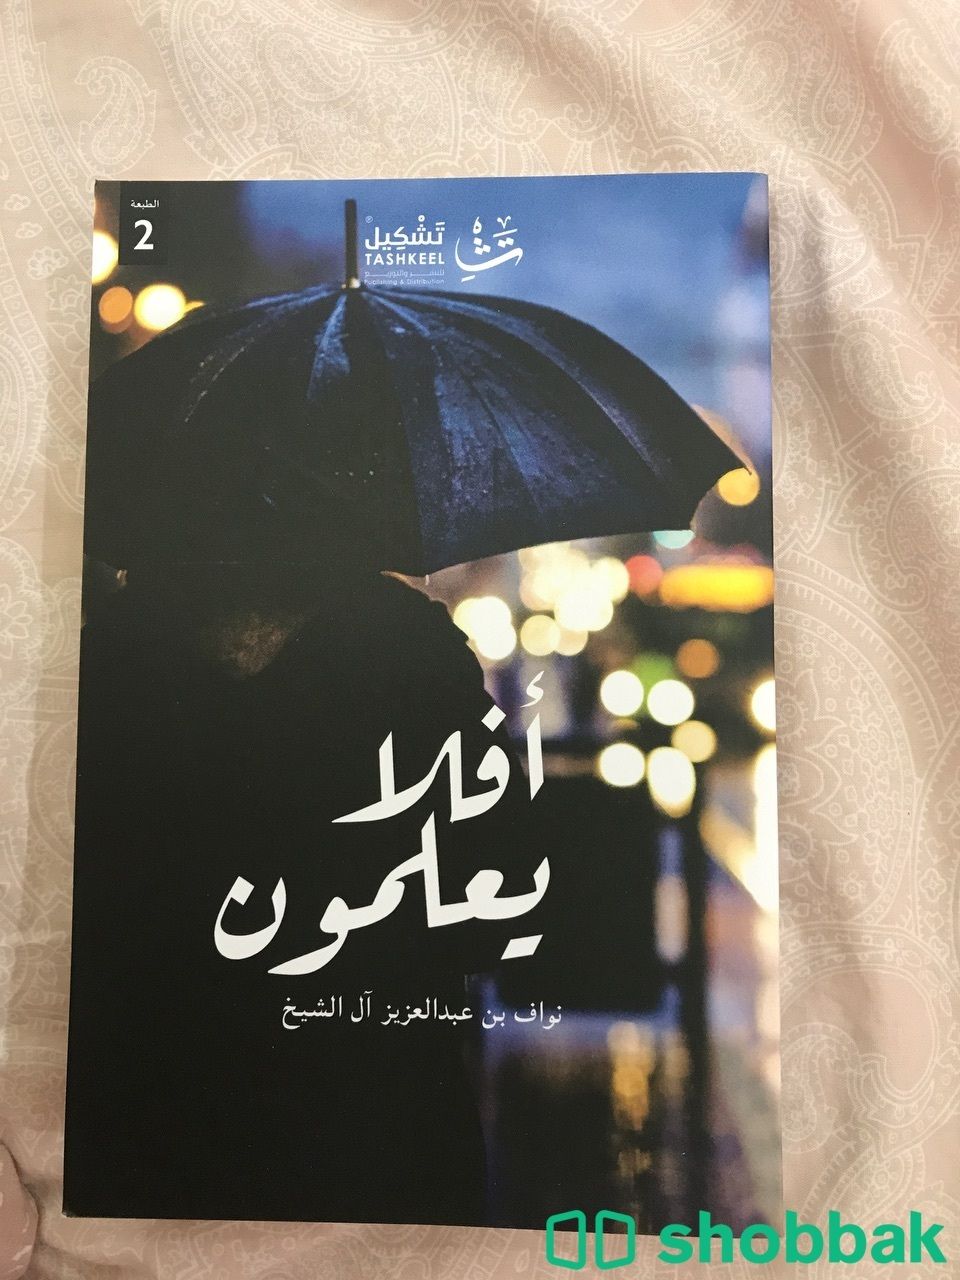 كتاب افلا يعلمون Shobbak Saudi Arabia